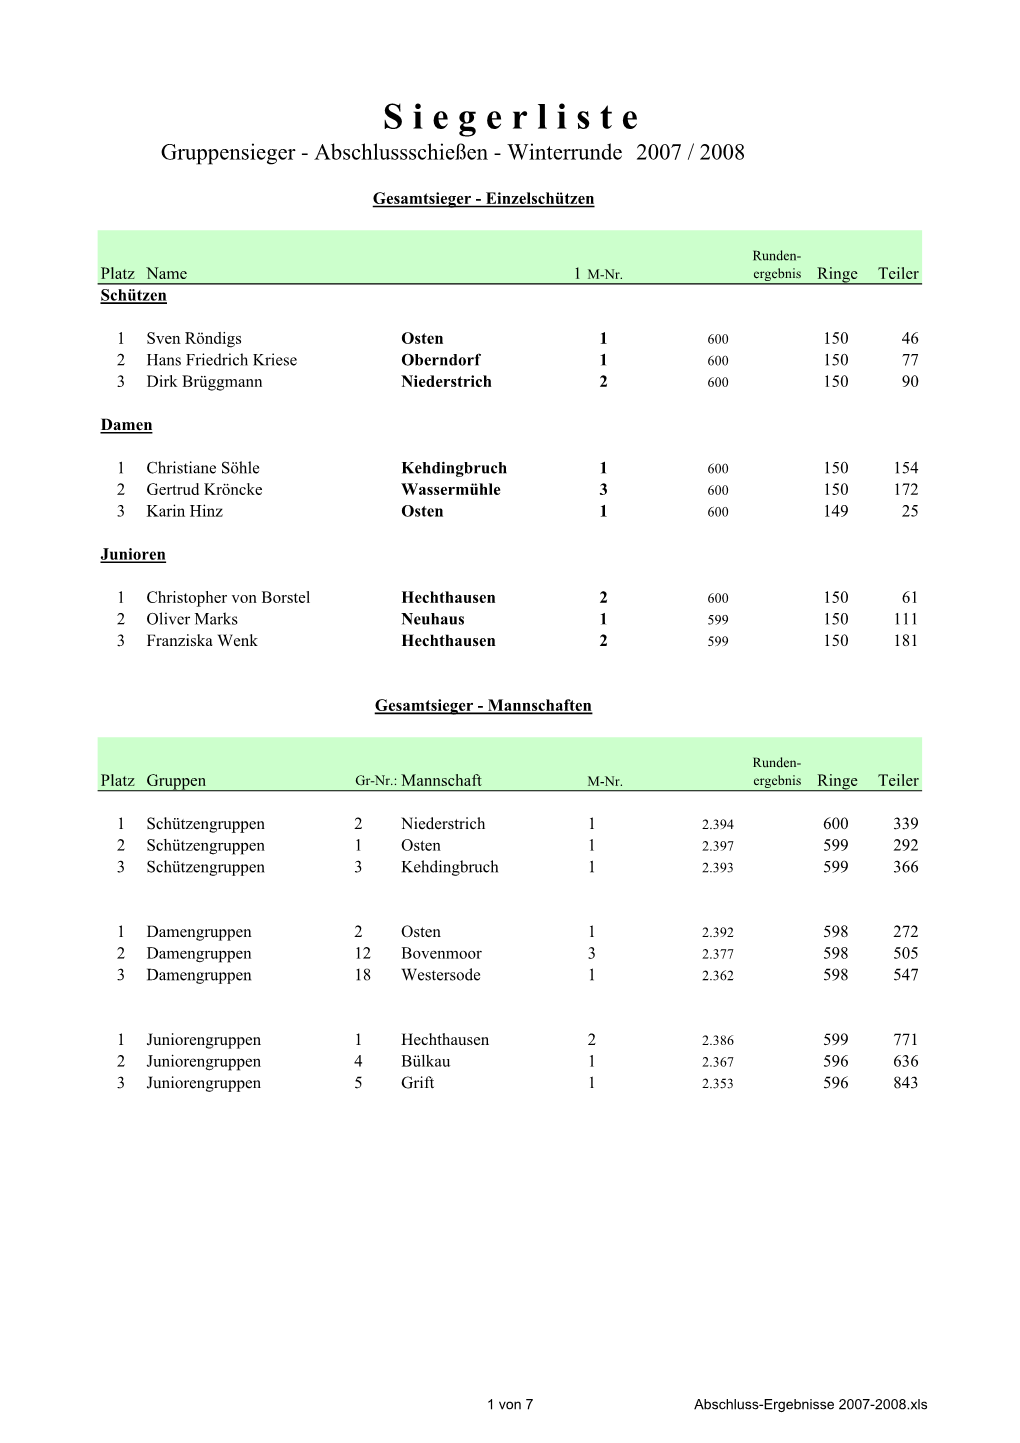 Abschluss-Ergebnisse 2007-2008.Xls Endergebnisse Gruppensieger-Abschlussschießen Winterrunde 2007 / 2008